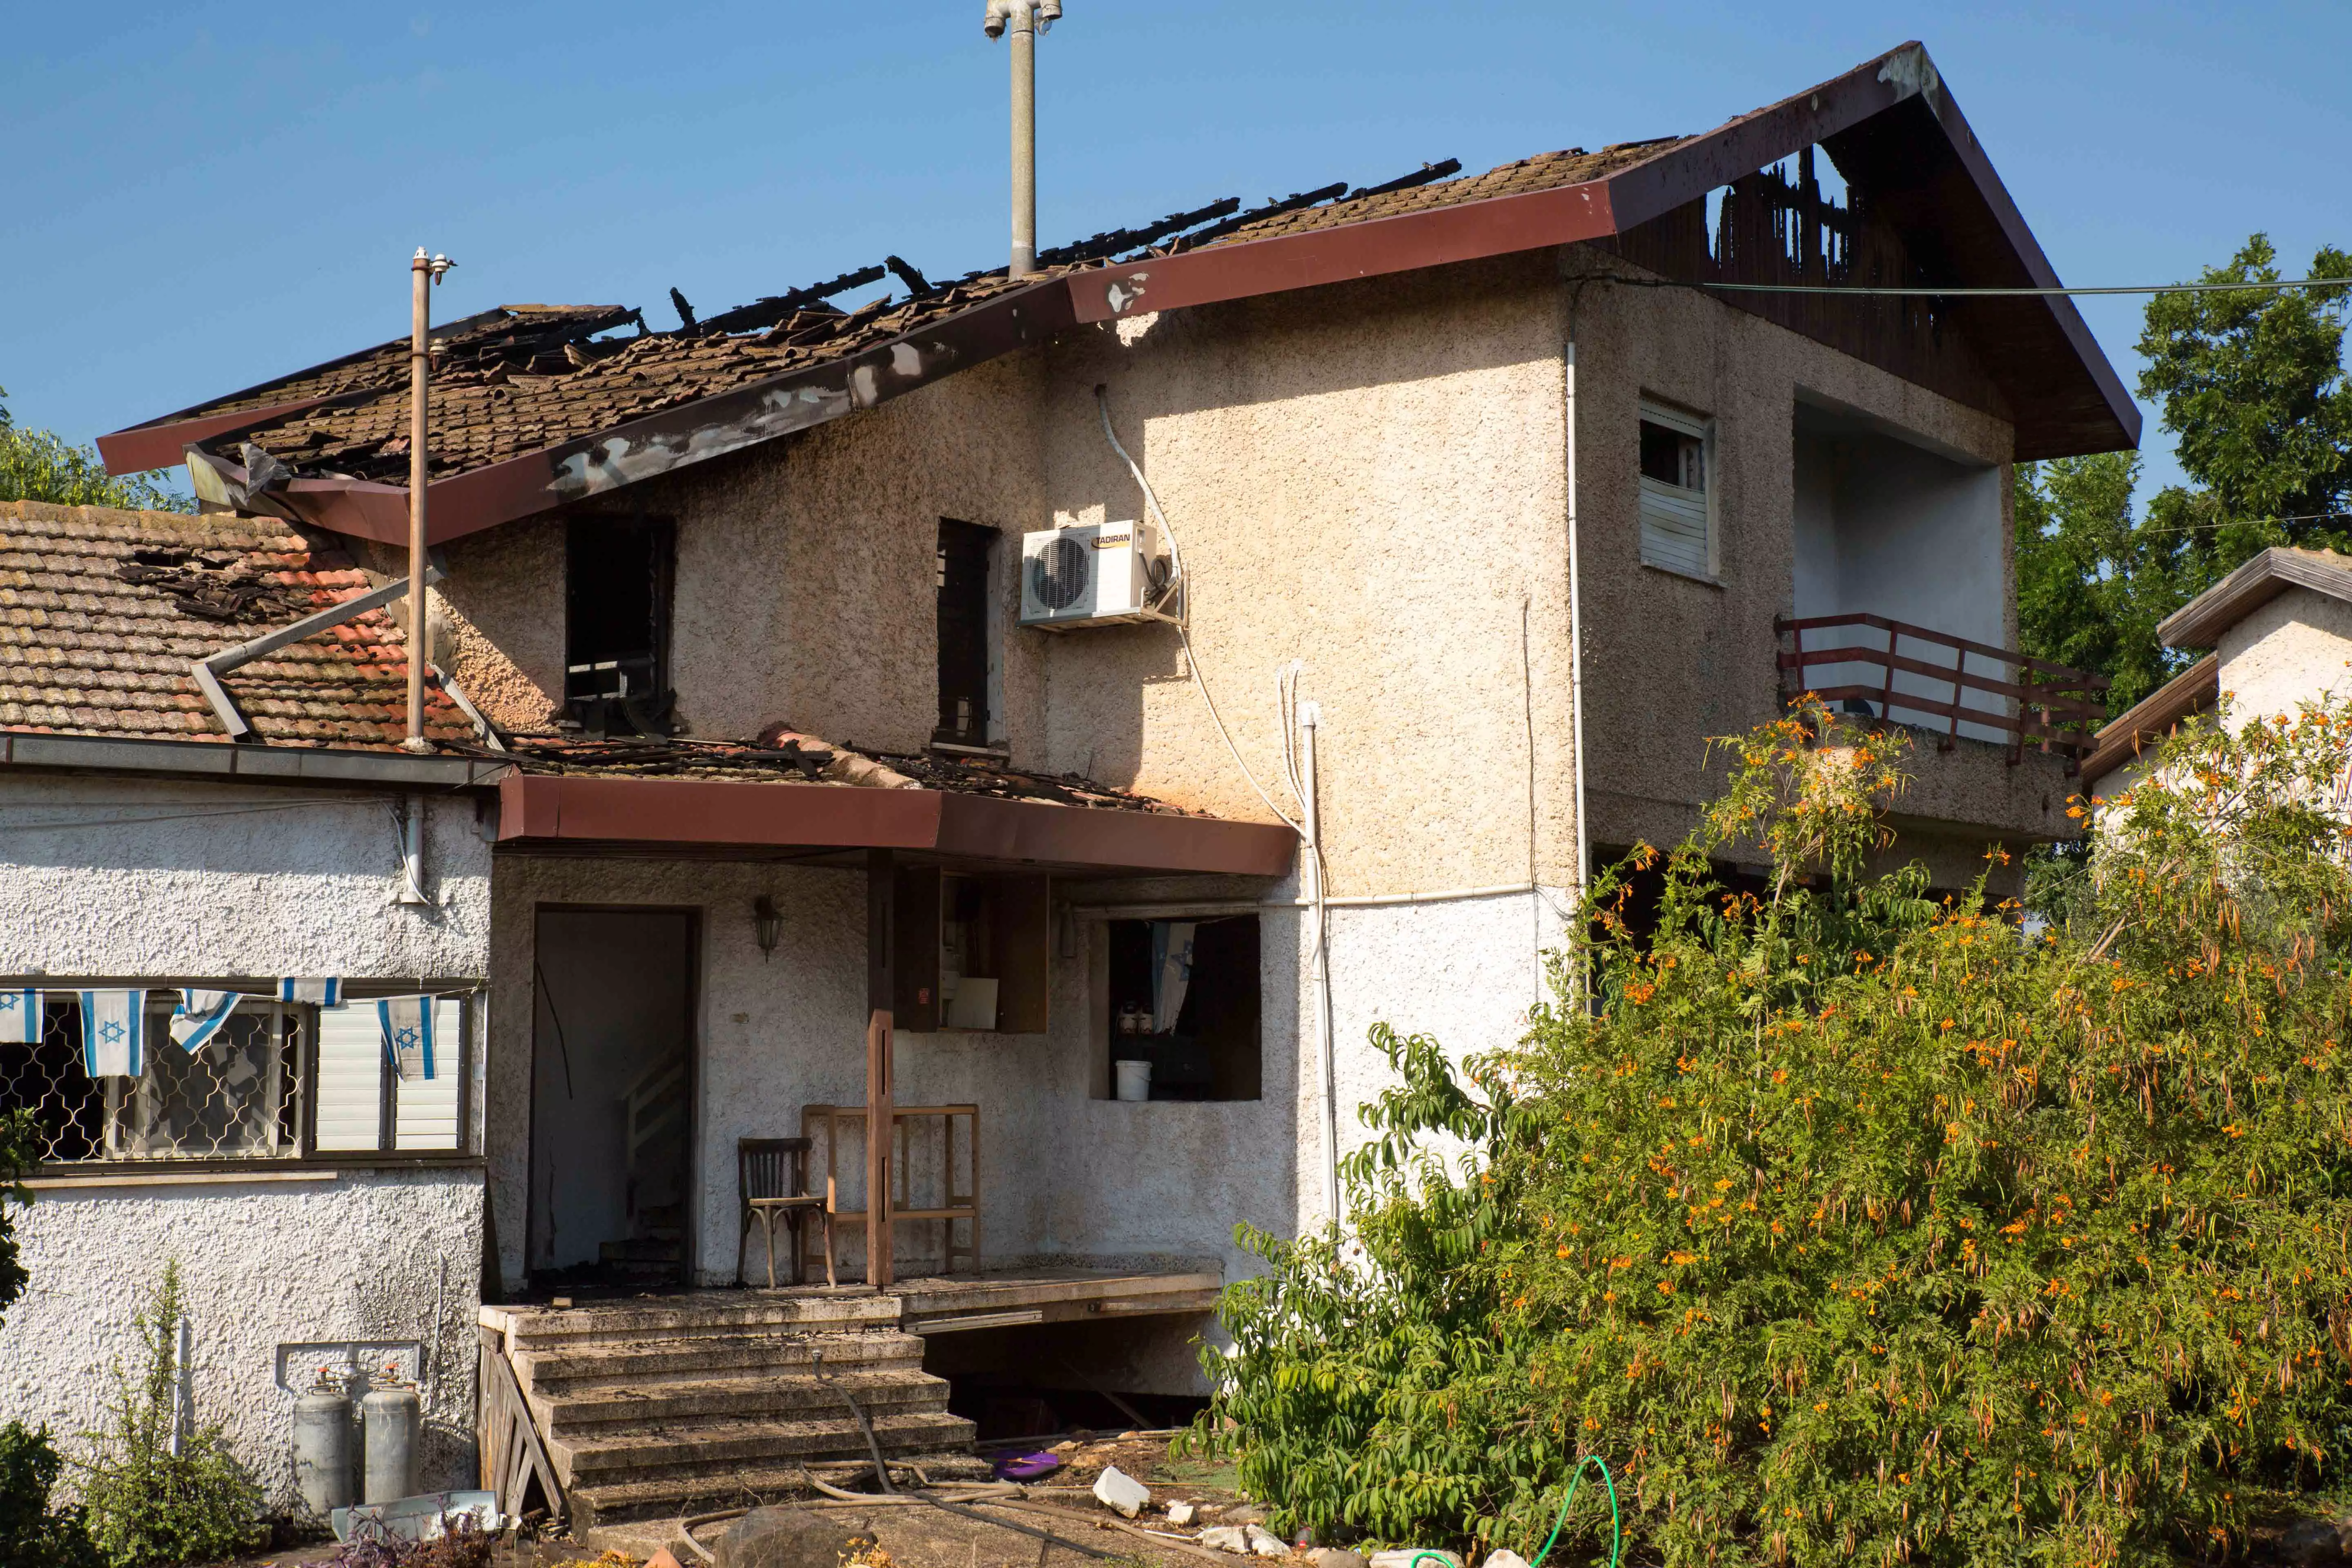 השריפה פרצה בעקבות כשל חשמלי בעליית הגג. הבית בכפר ברוך